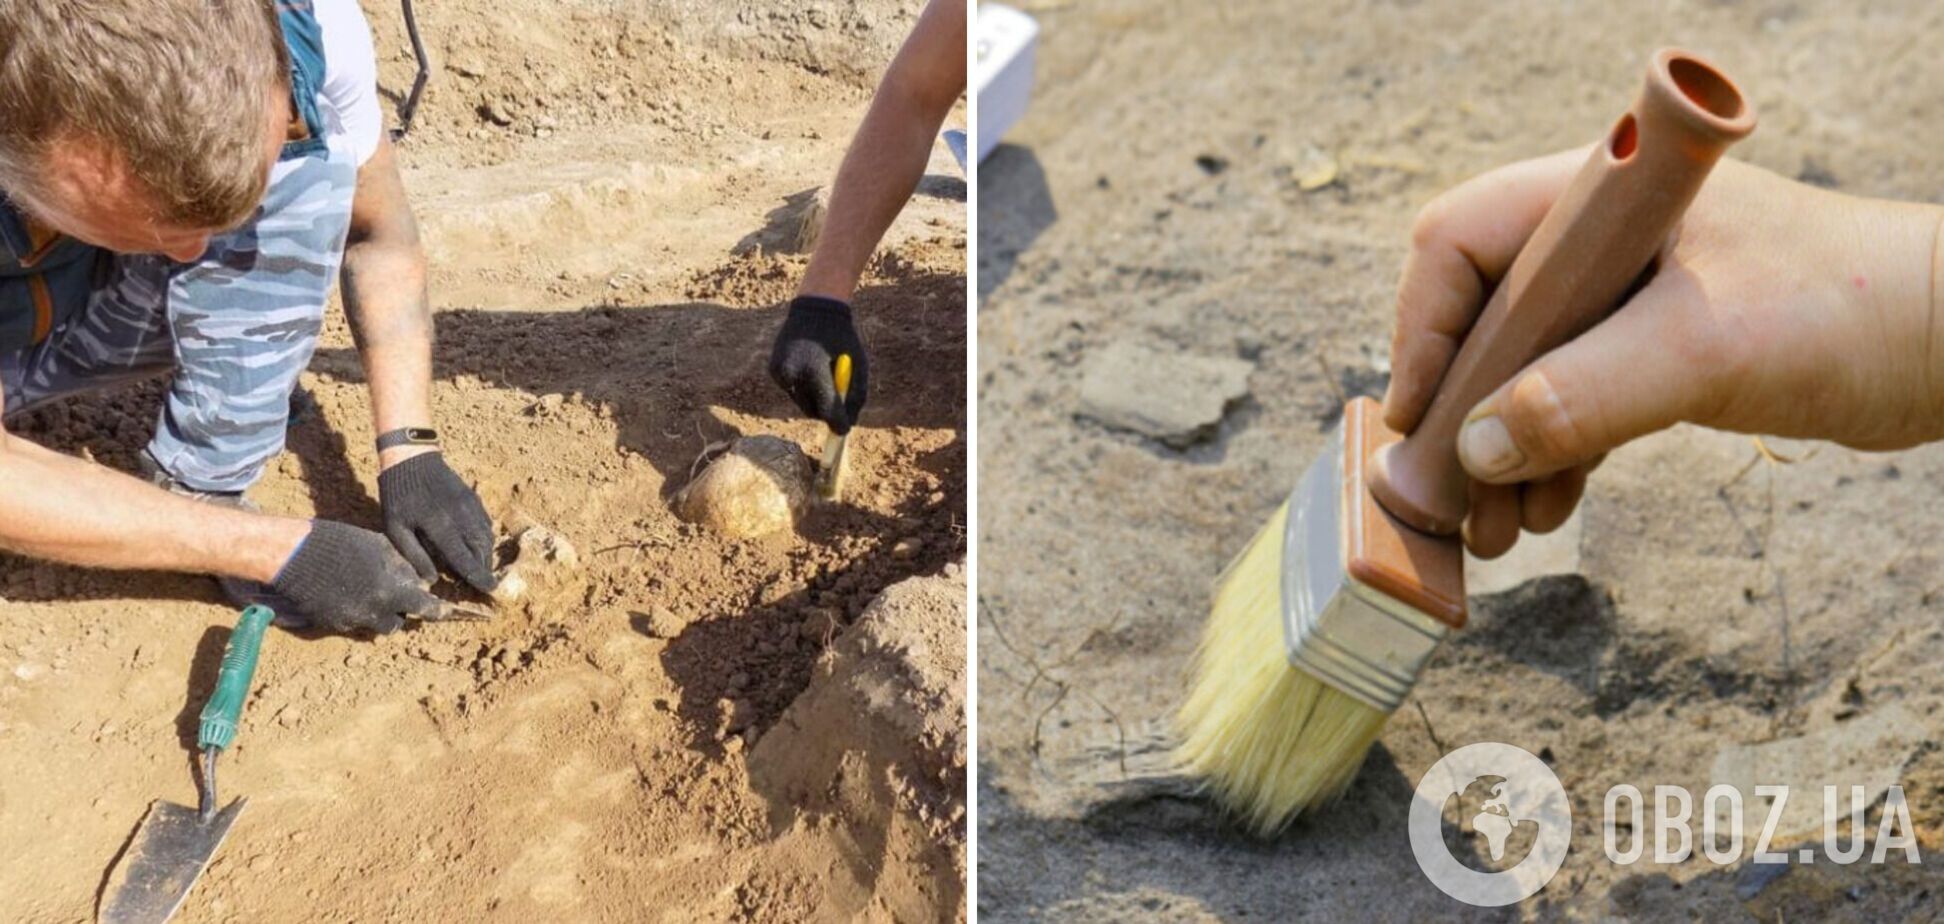 Археологи раскопали в Китае 14 старинных гробниц: найдены бронзовые изделия и каменные украшения, которым может быть больше 2 тысяч лет